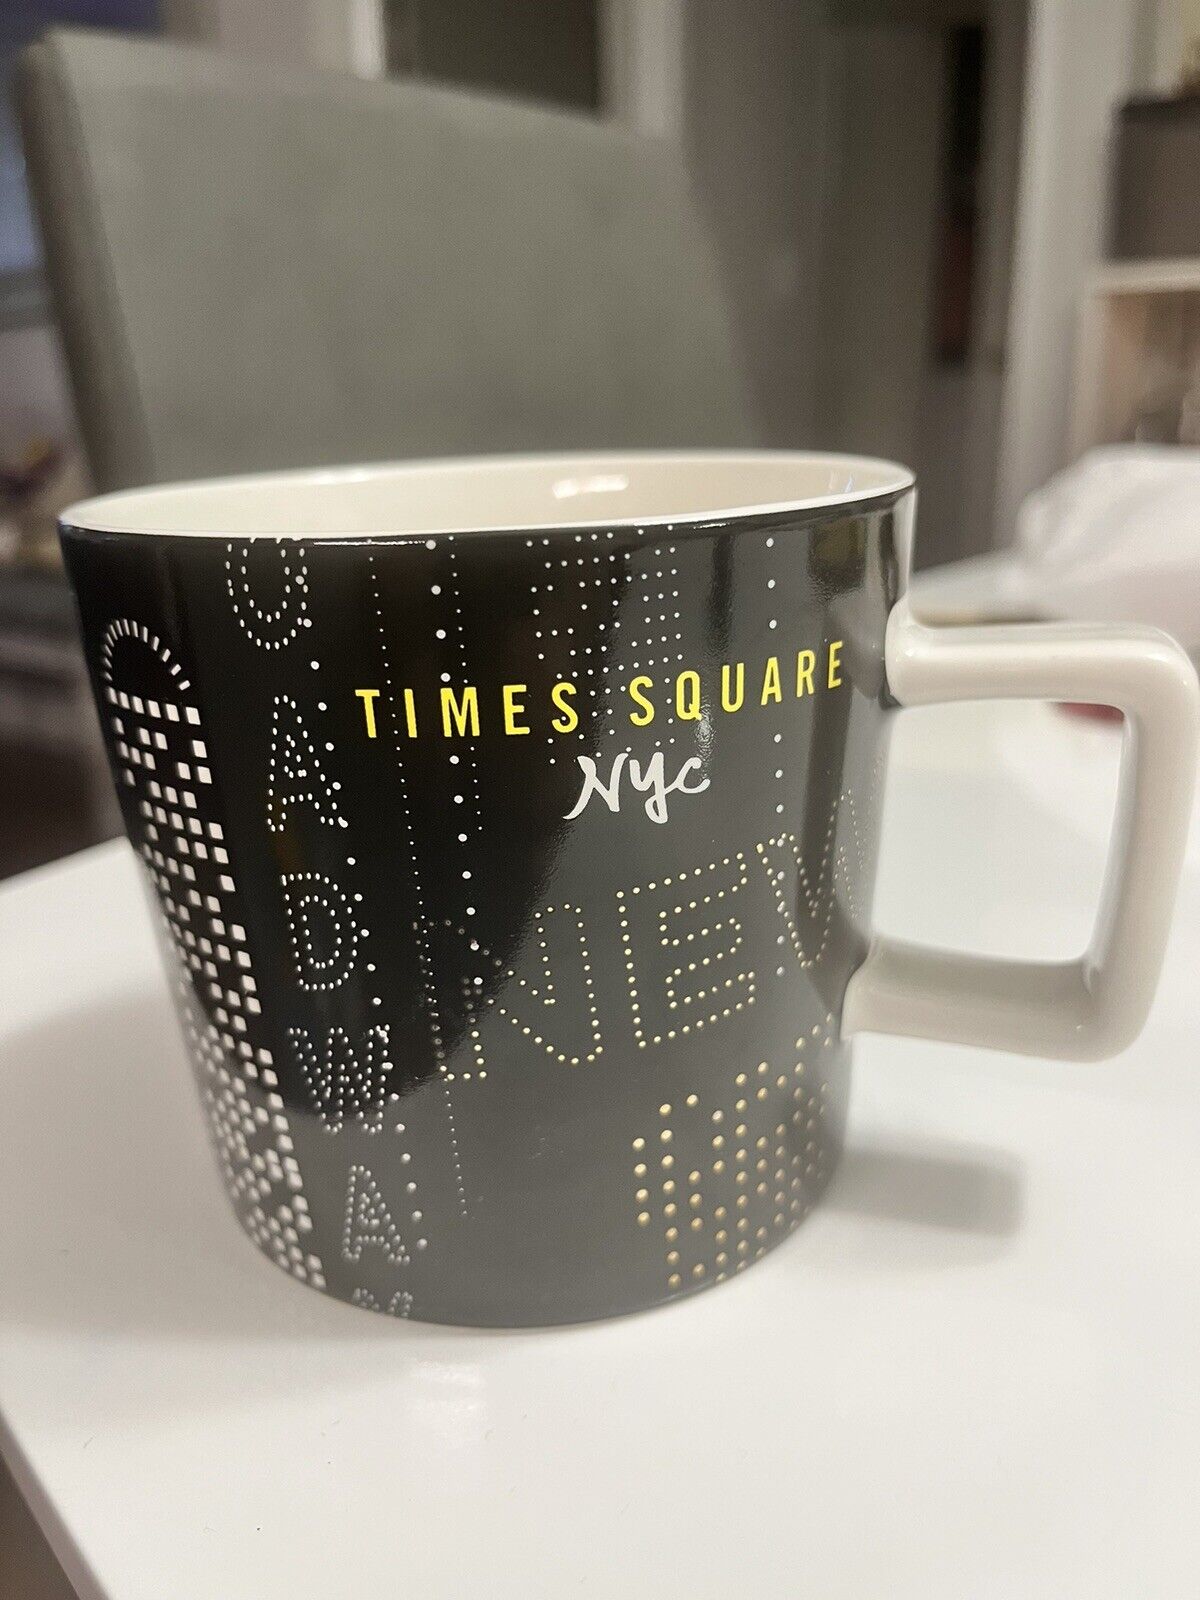 Starbucks Times Square NYC Collection Coffee Mug 14 oz  2014 New York City